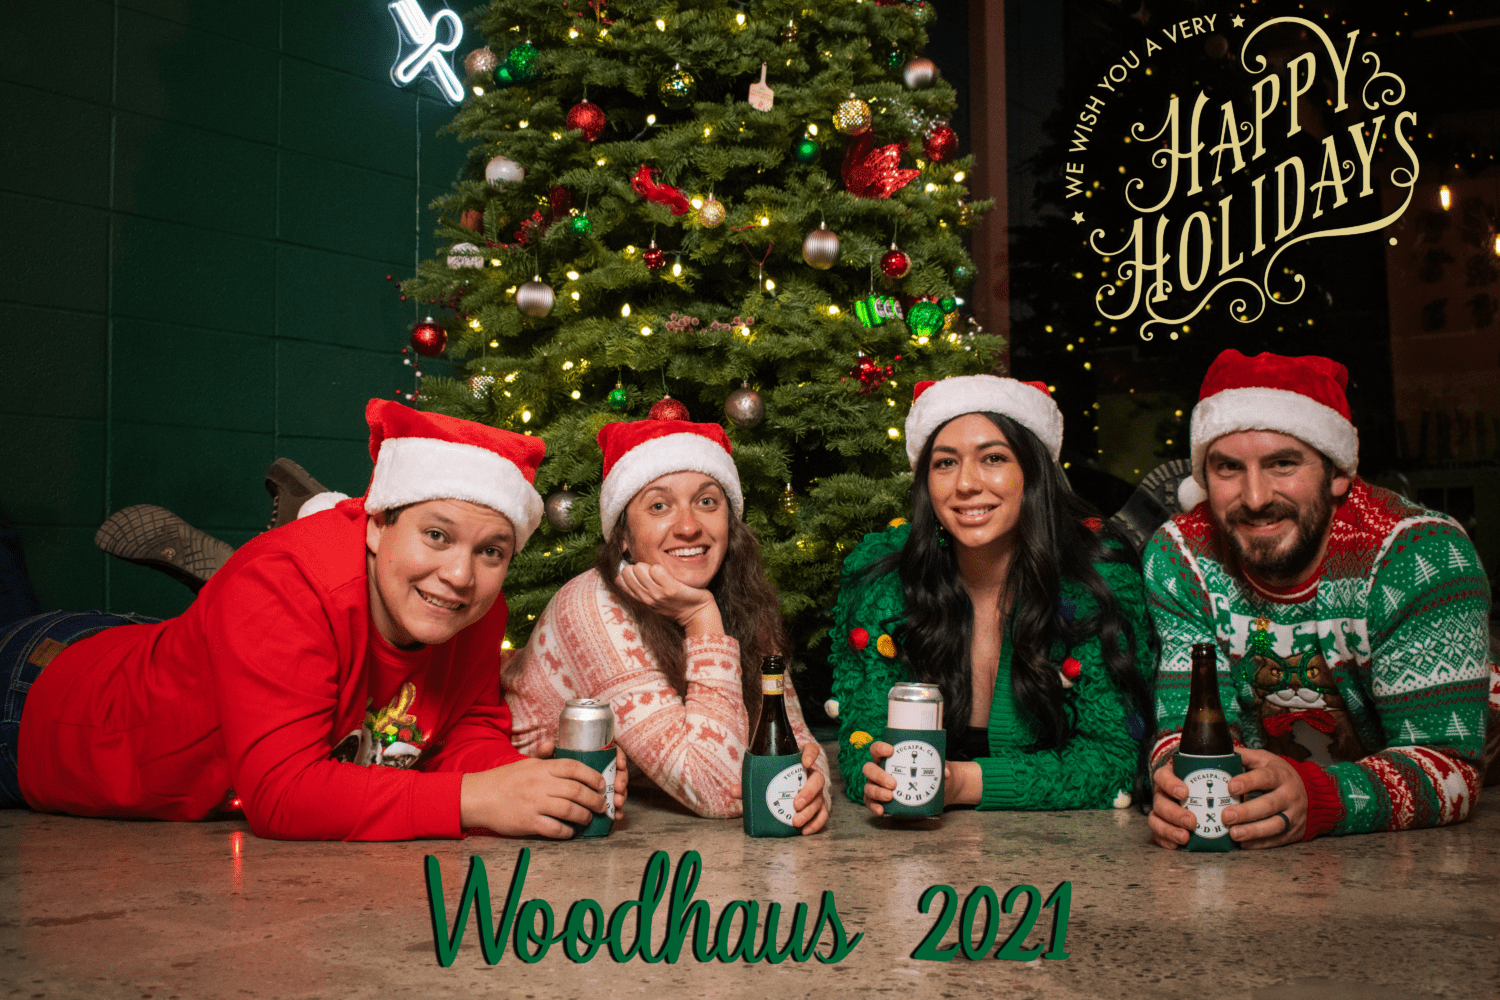 Woodhaus Merry Christmas 2021